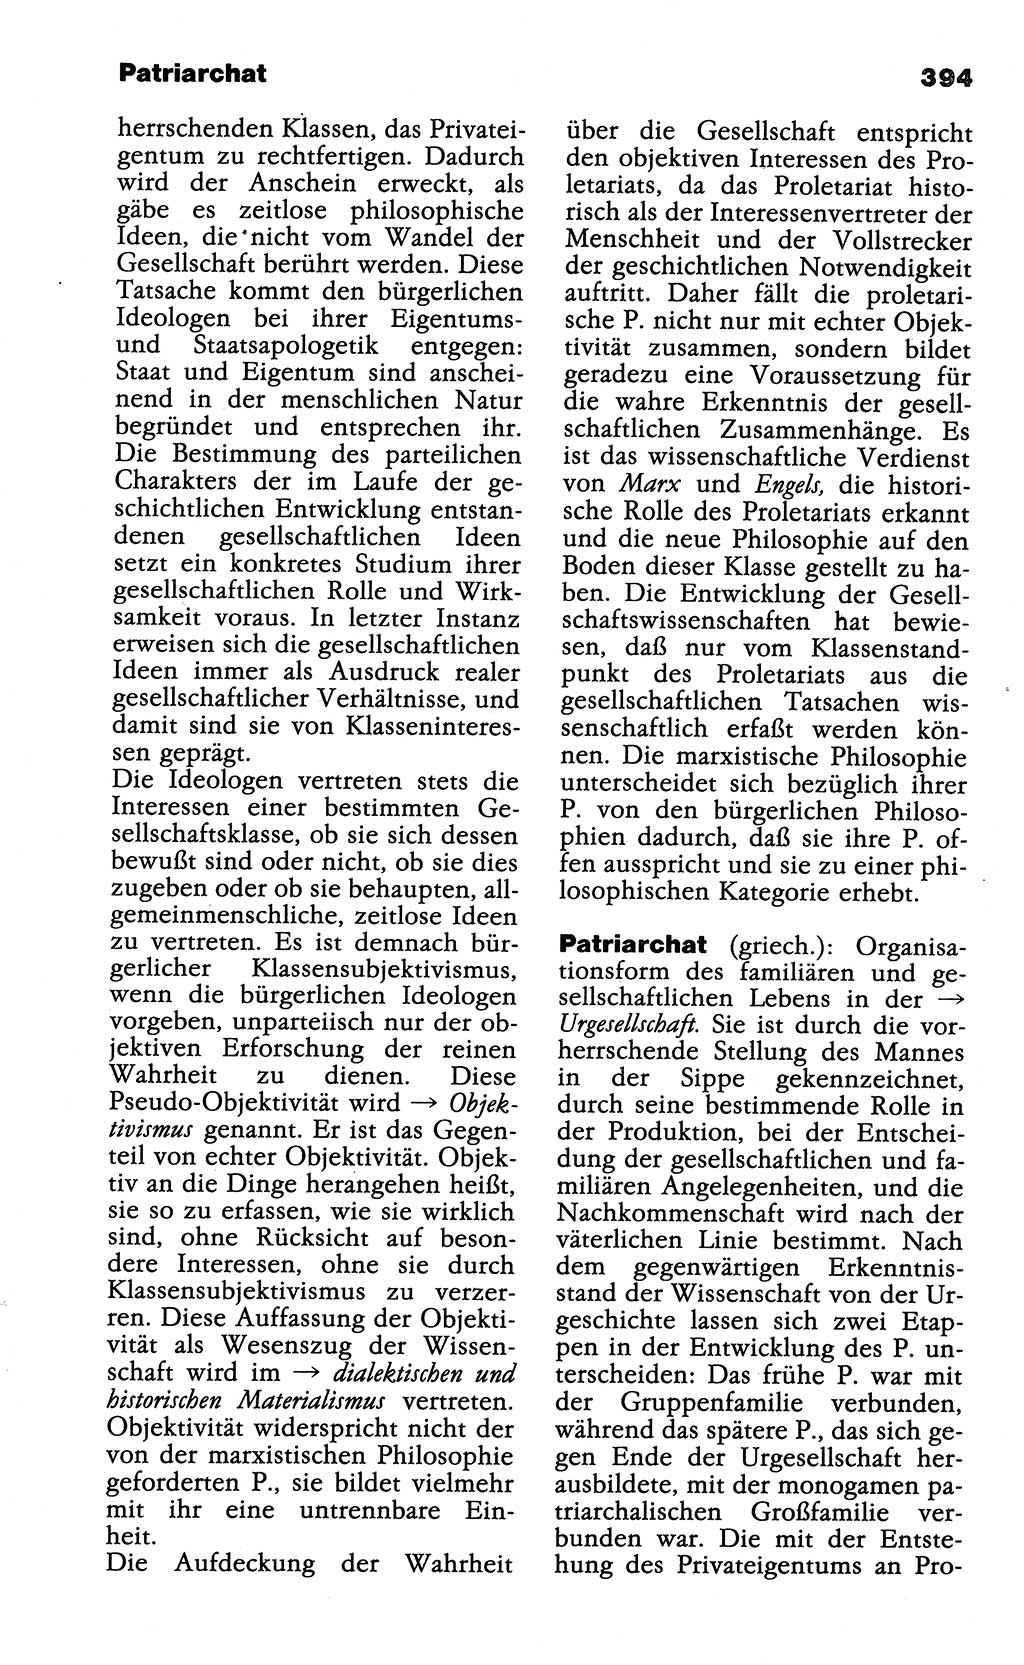 Wörterbuch der marxistisch-leninistischen Philosophie [Deutsche Demokratische Republik (DDR)] 1985, Seite 394 (Wb. ML Phil. DDR 1985, S. 394)